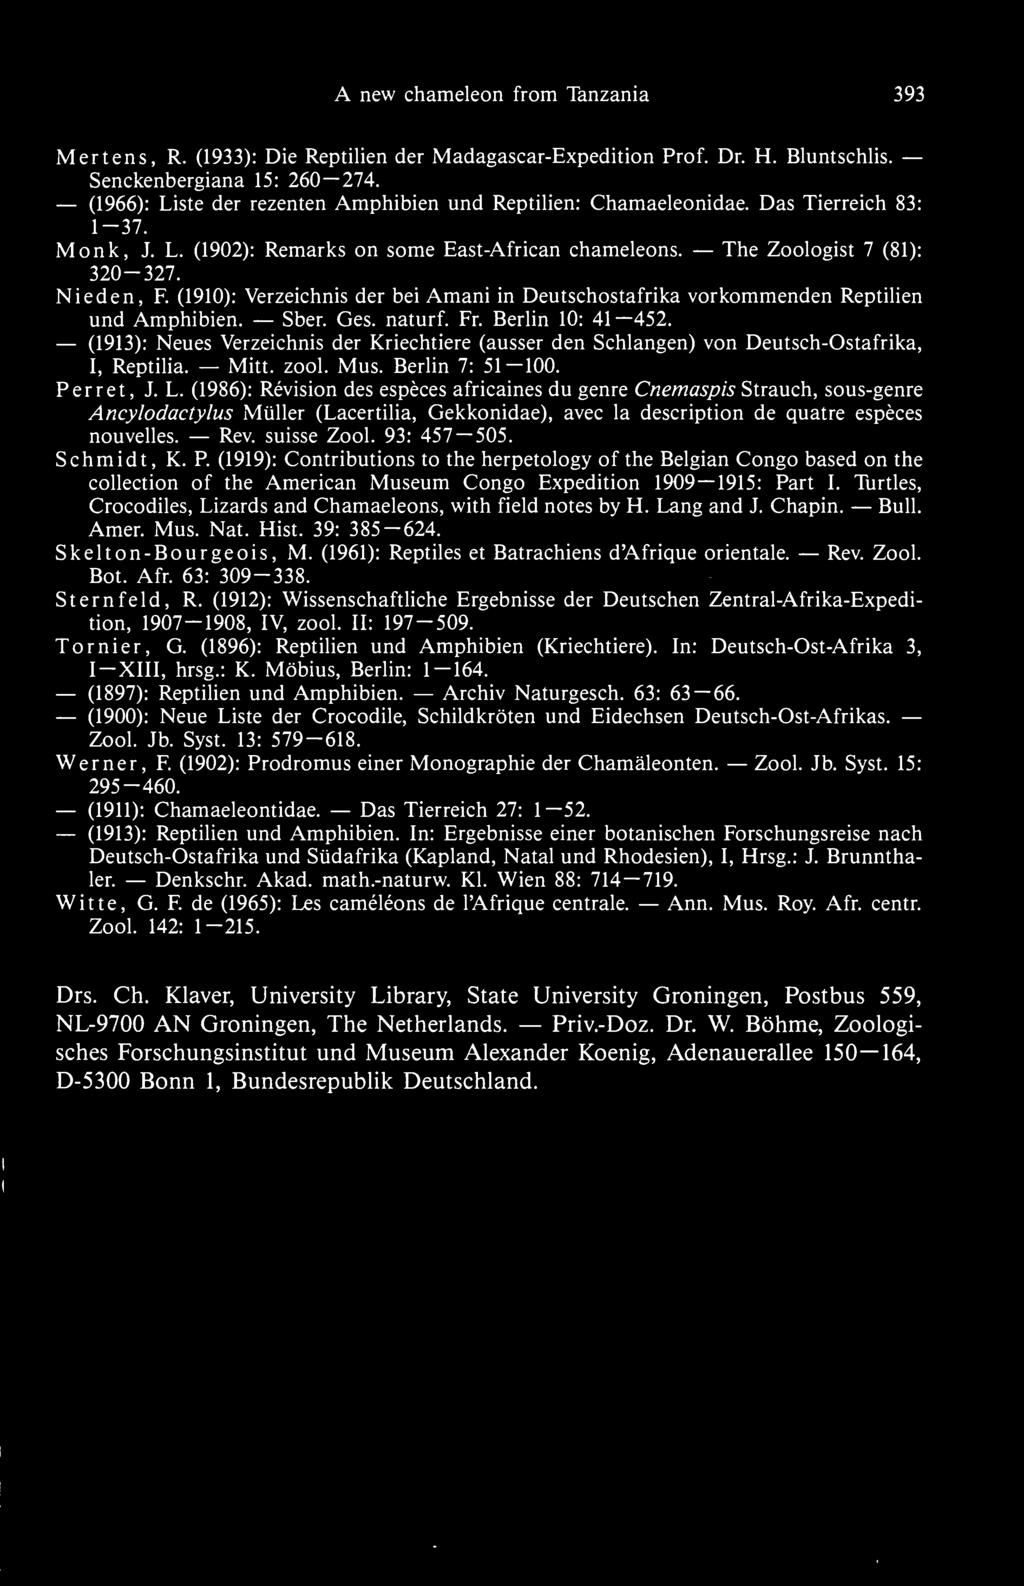 (1910): Verzeichnis der bei Amani in Deutschostafrika vorkommenden Reptilien und Amphibien. Sber. Ges. naturf. Fr. Berlin 10: 41 452.